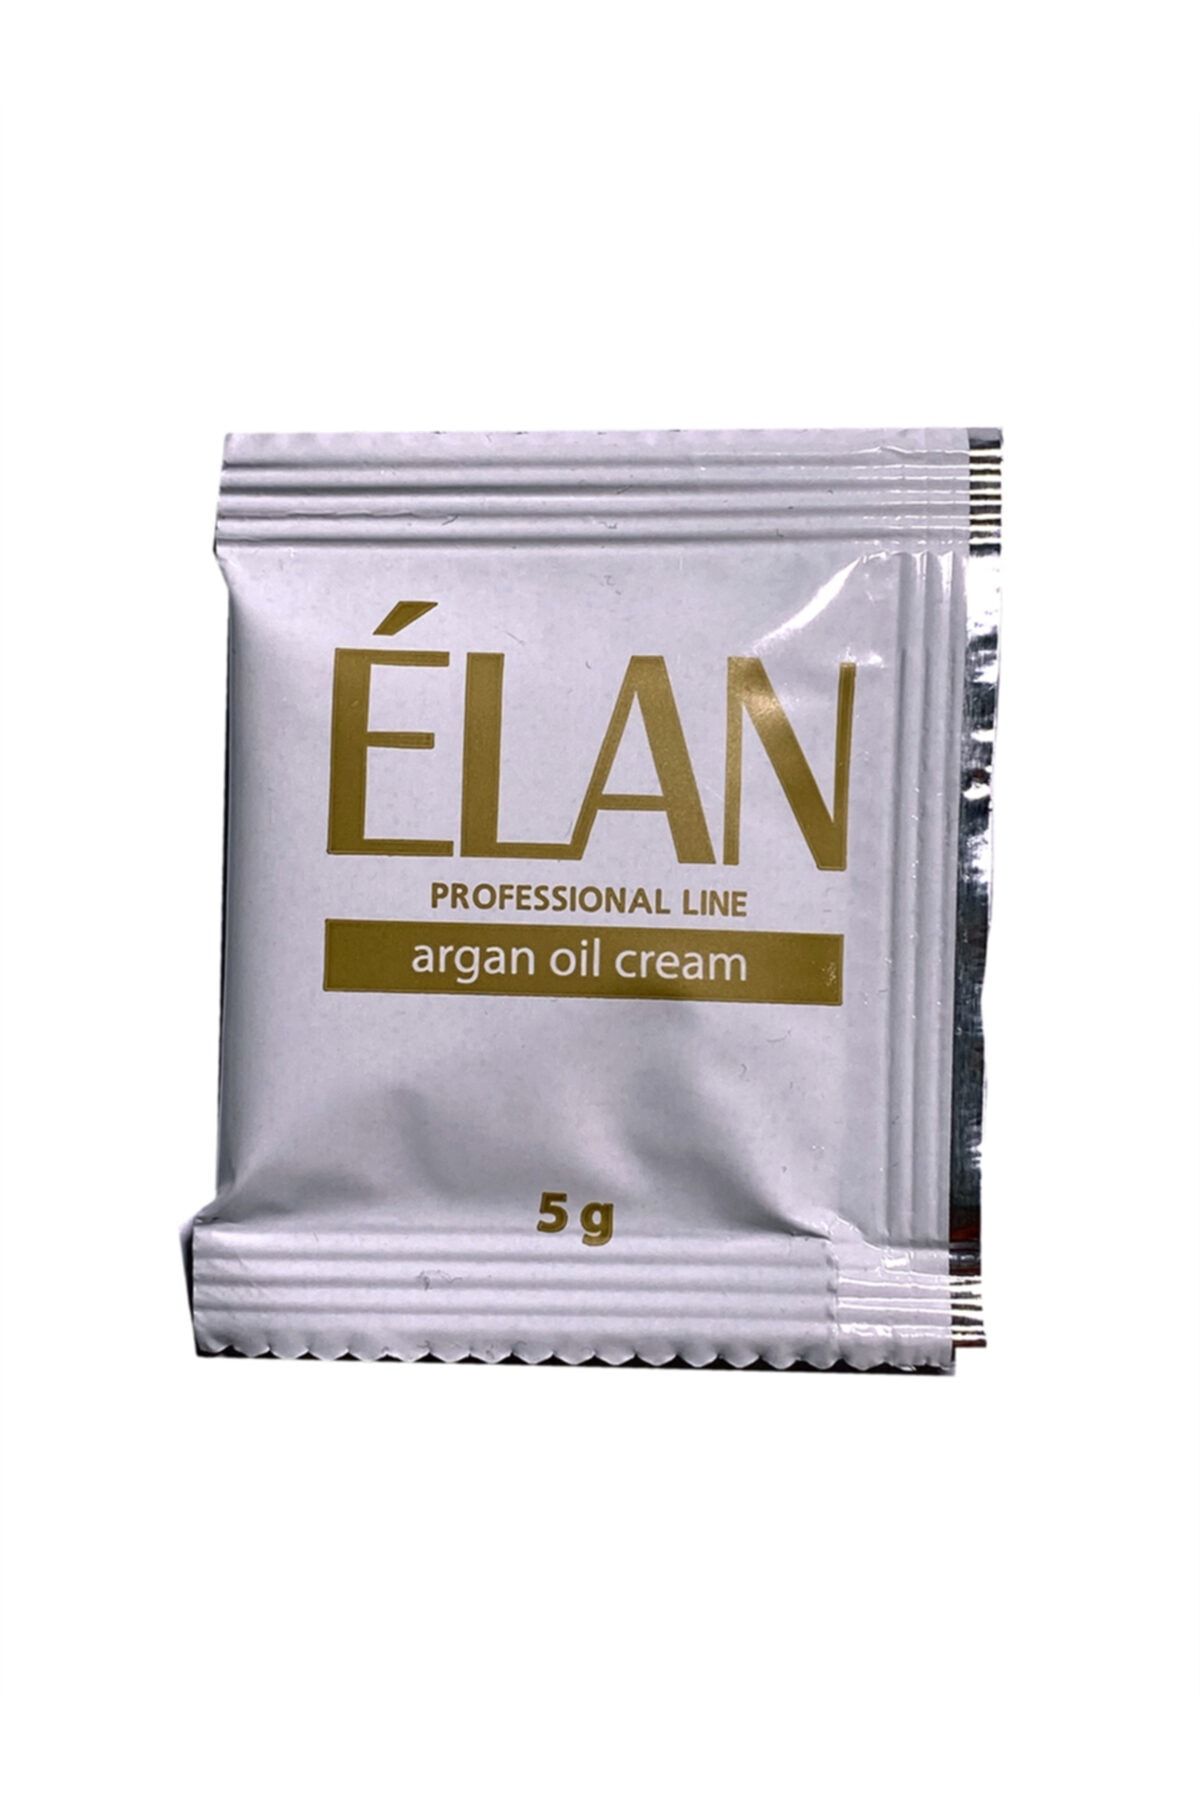 Elan / Argan Oil Cream - Cilt Koruyucu Argan Yağı - Şase Şeklinde 5g